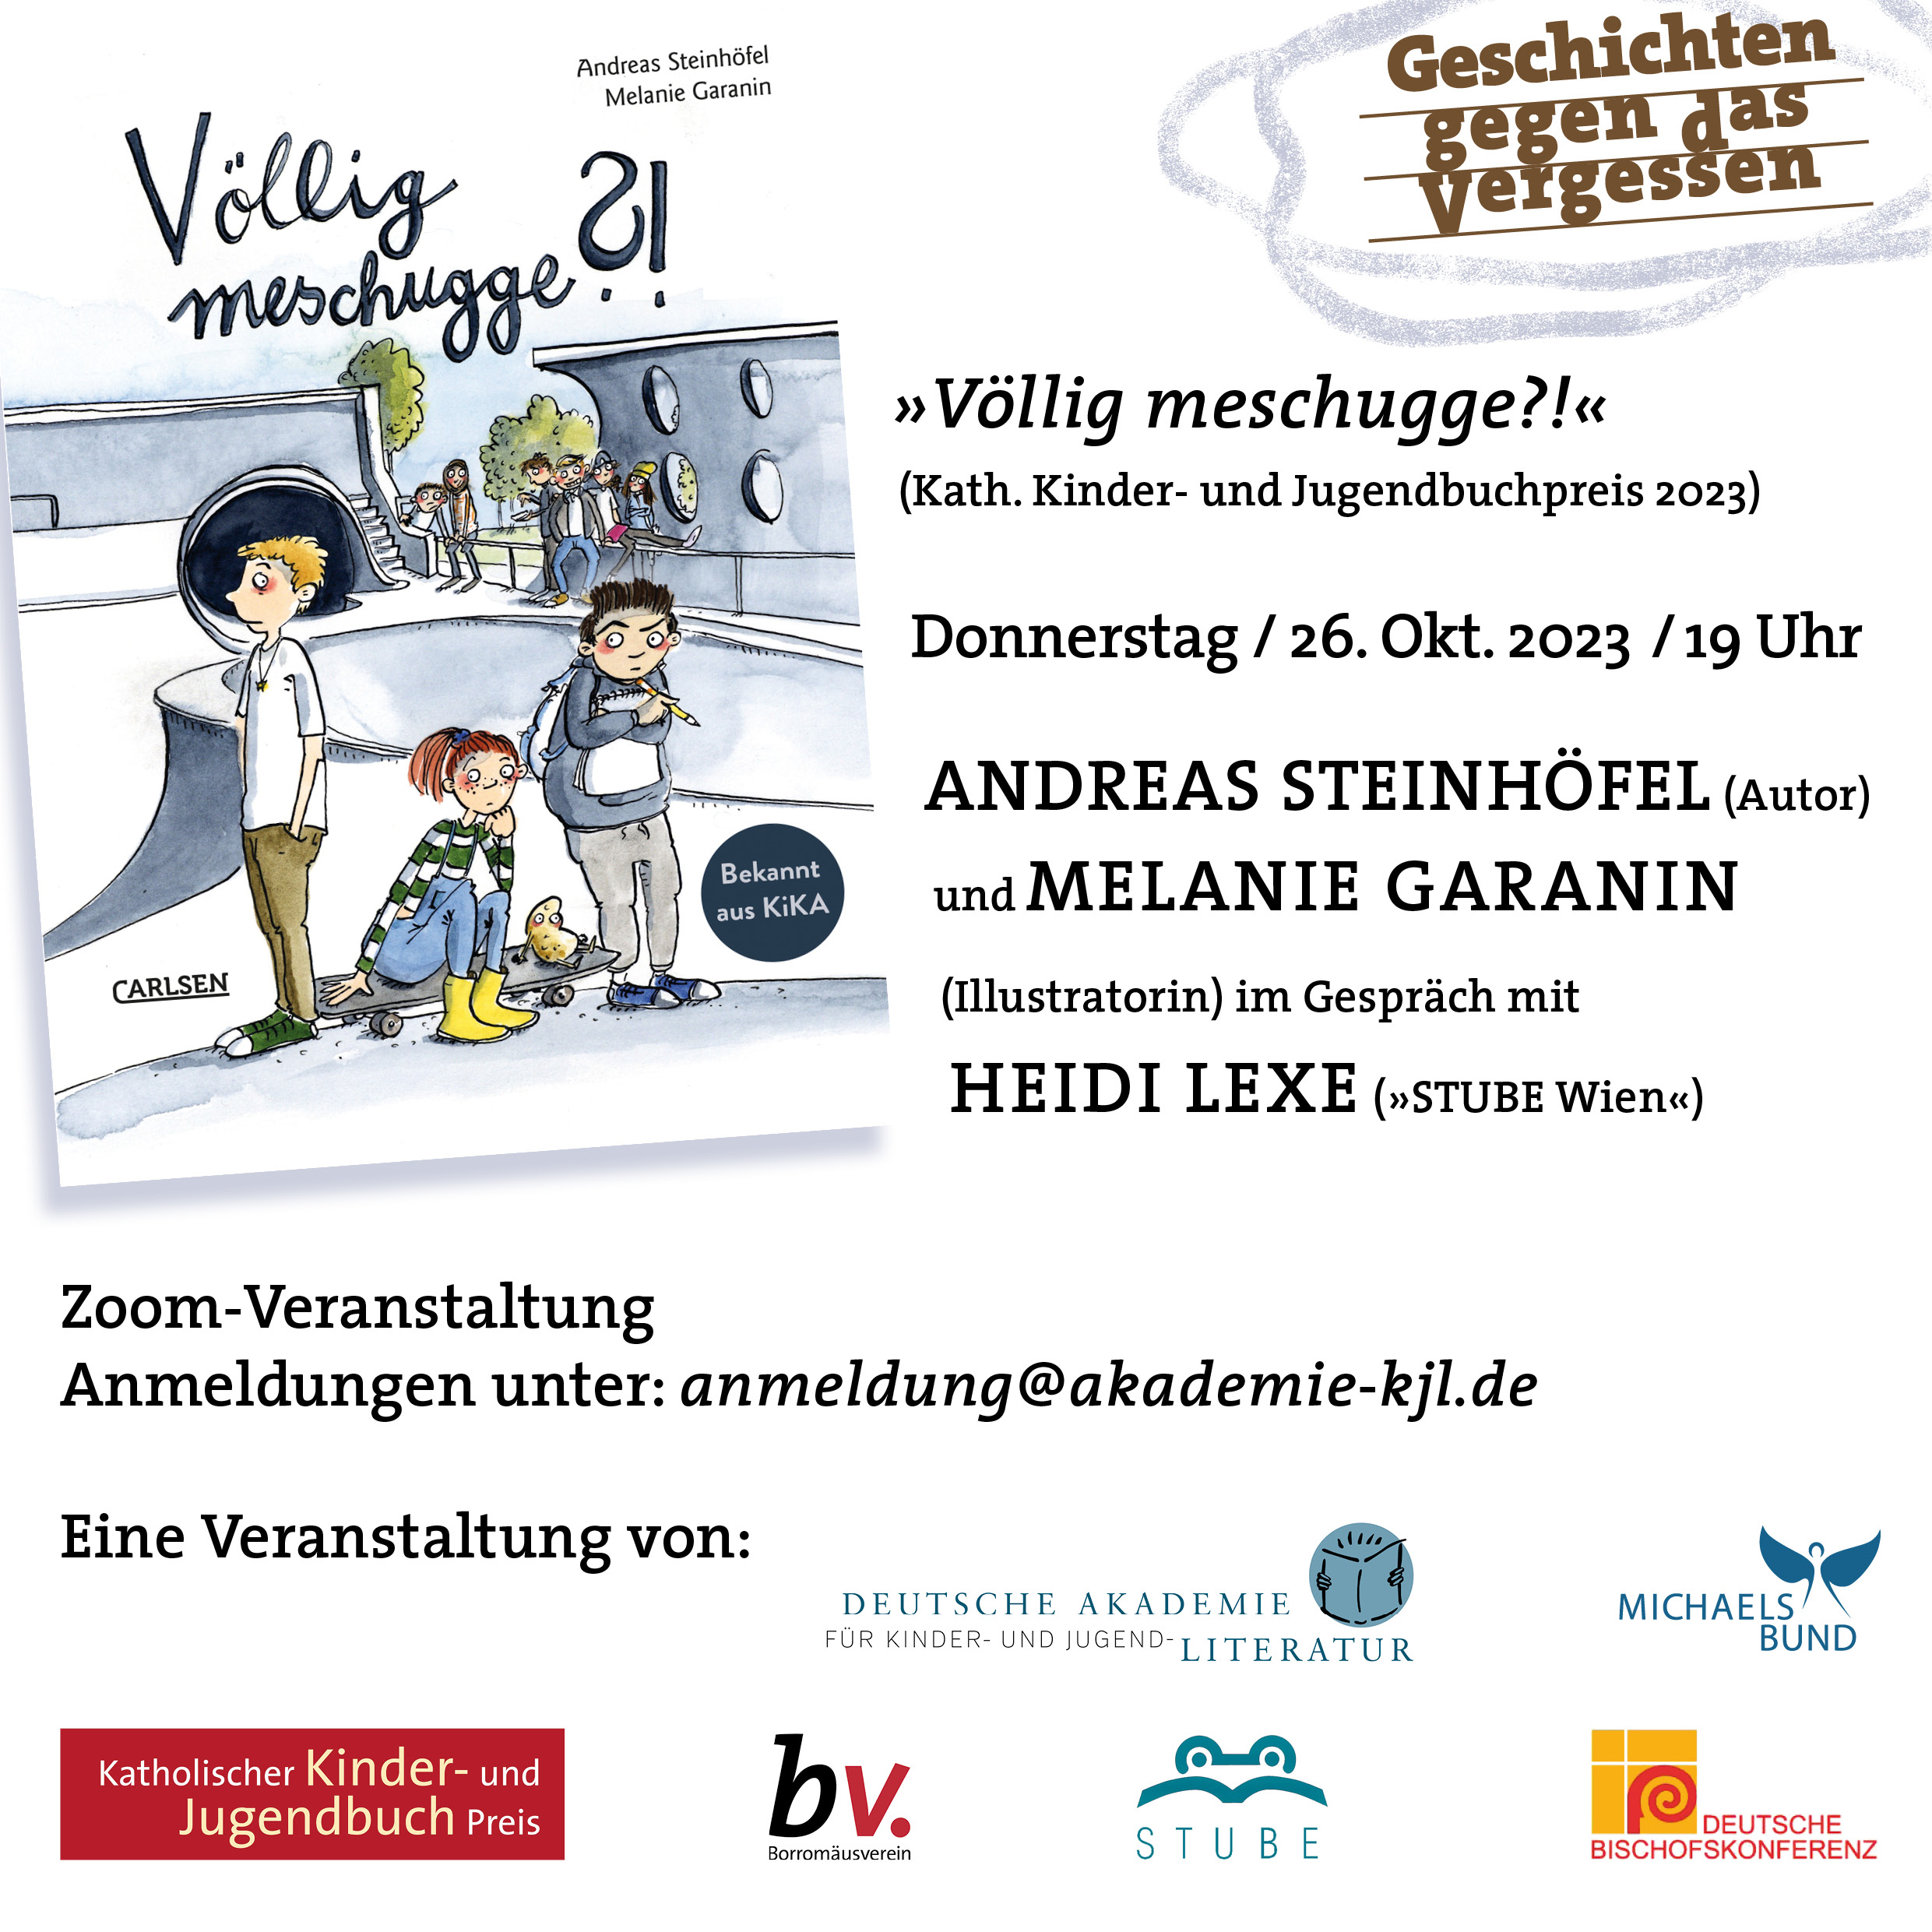 Online-Begegnung mit Andreas Steinhöfel und Melanie Garanin im Gespräch mit Heidi Lexe (23.02.2023)